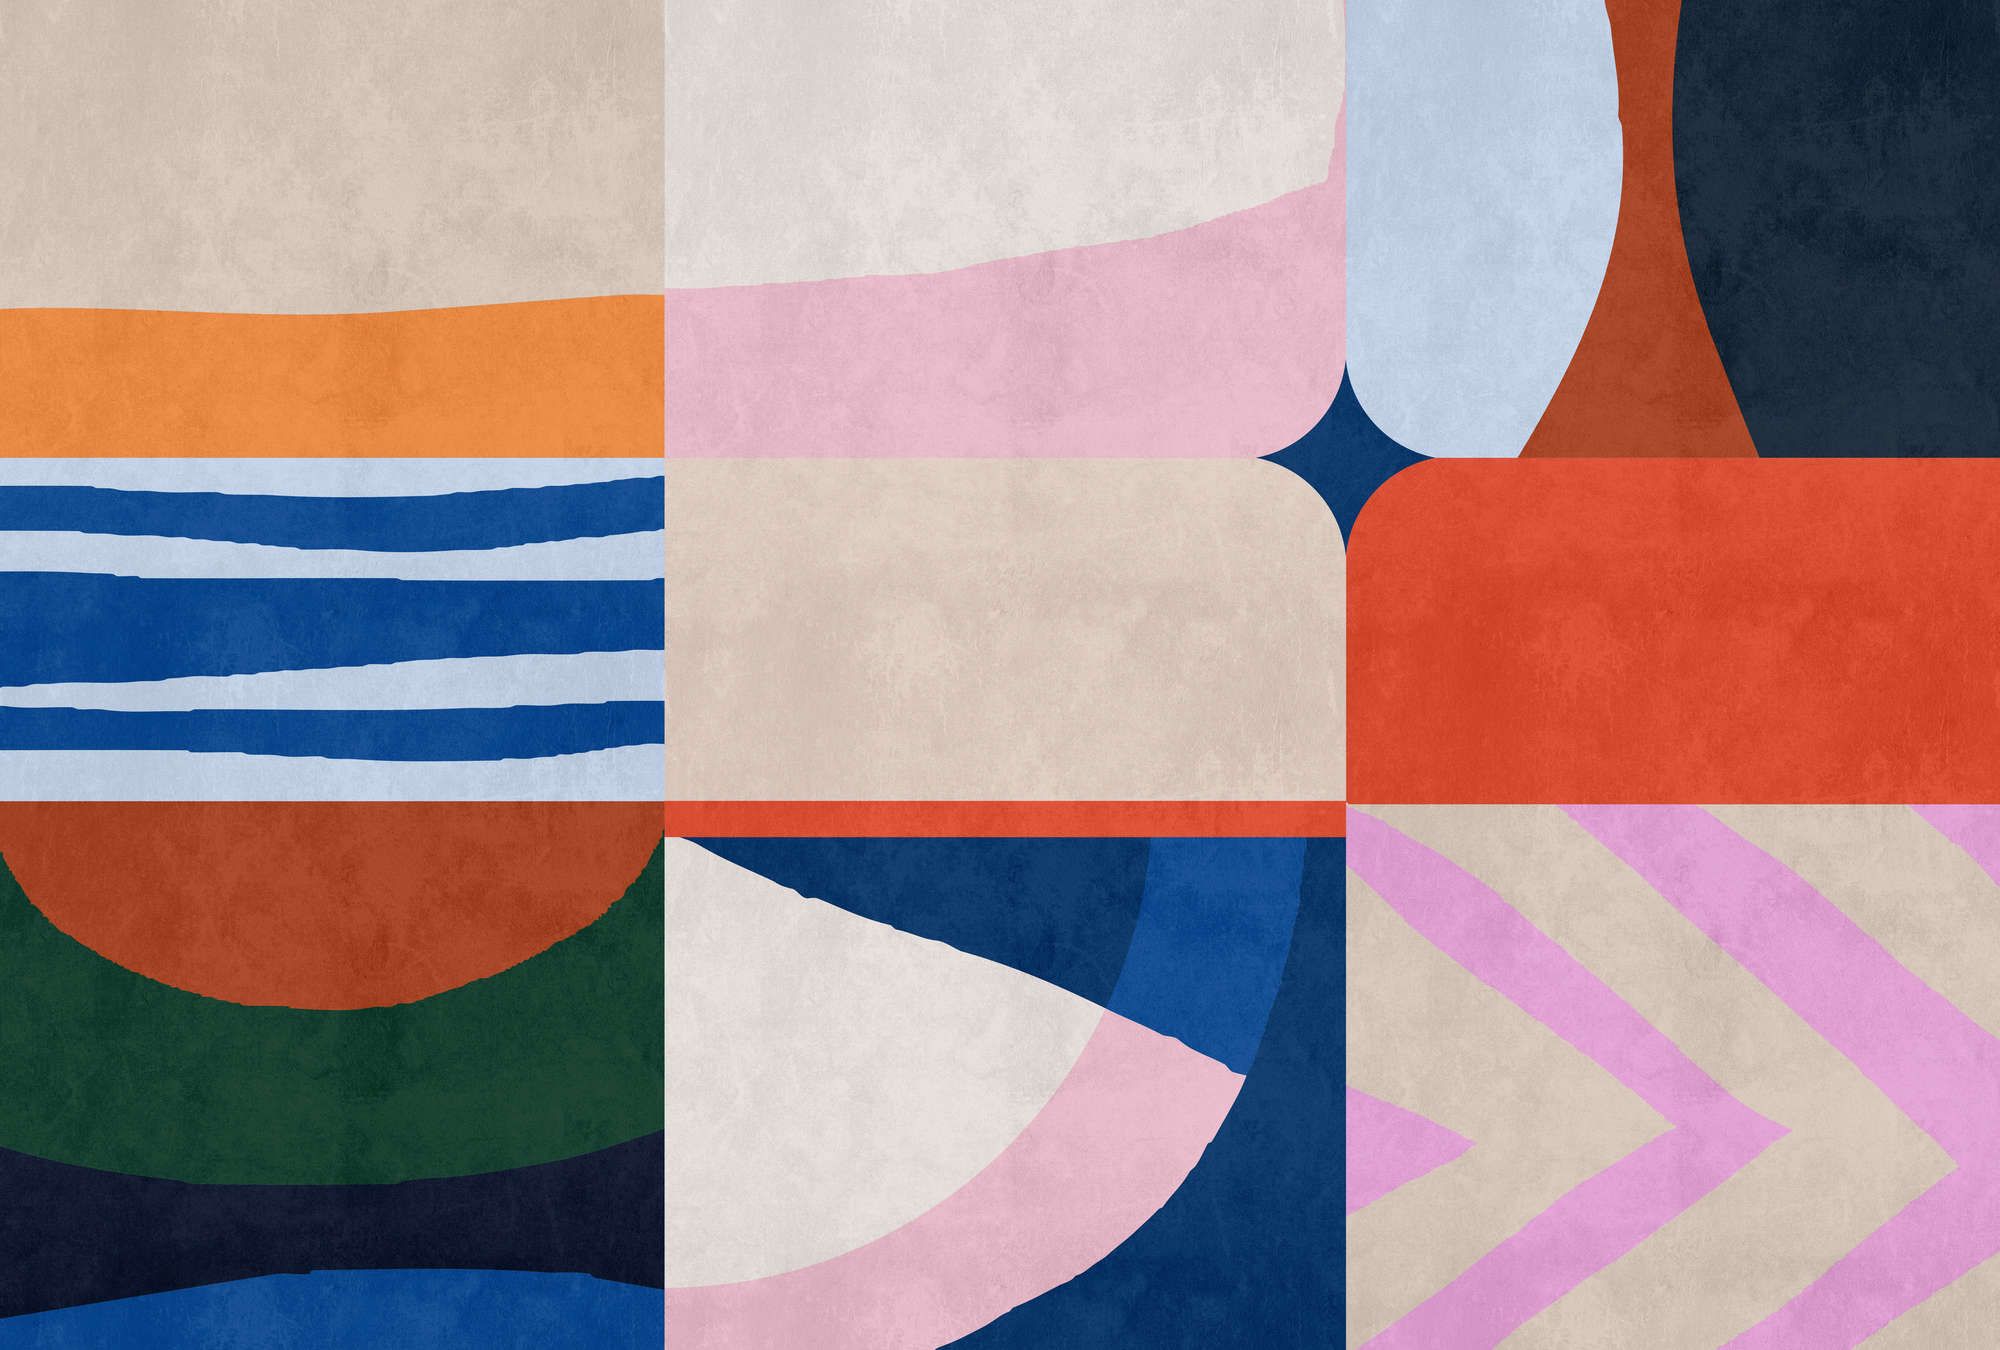             papier peint en papier panoramique »mañana« - Style patchwork coloré avec structure d'enduit béton - intissé légèrement structuré
        